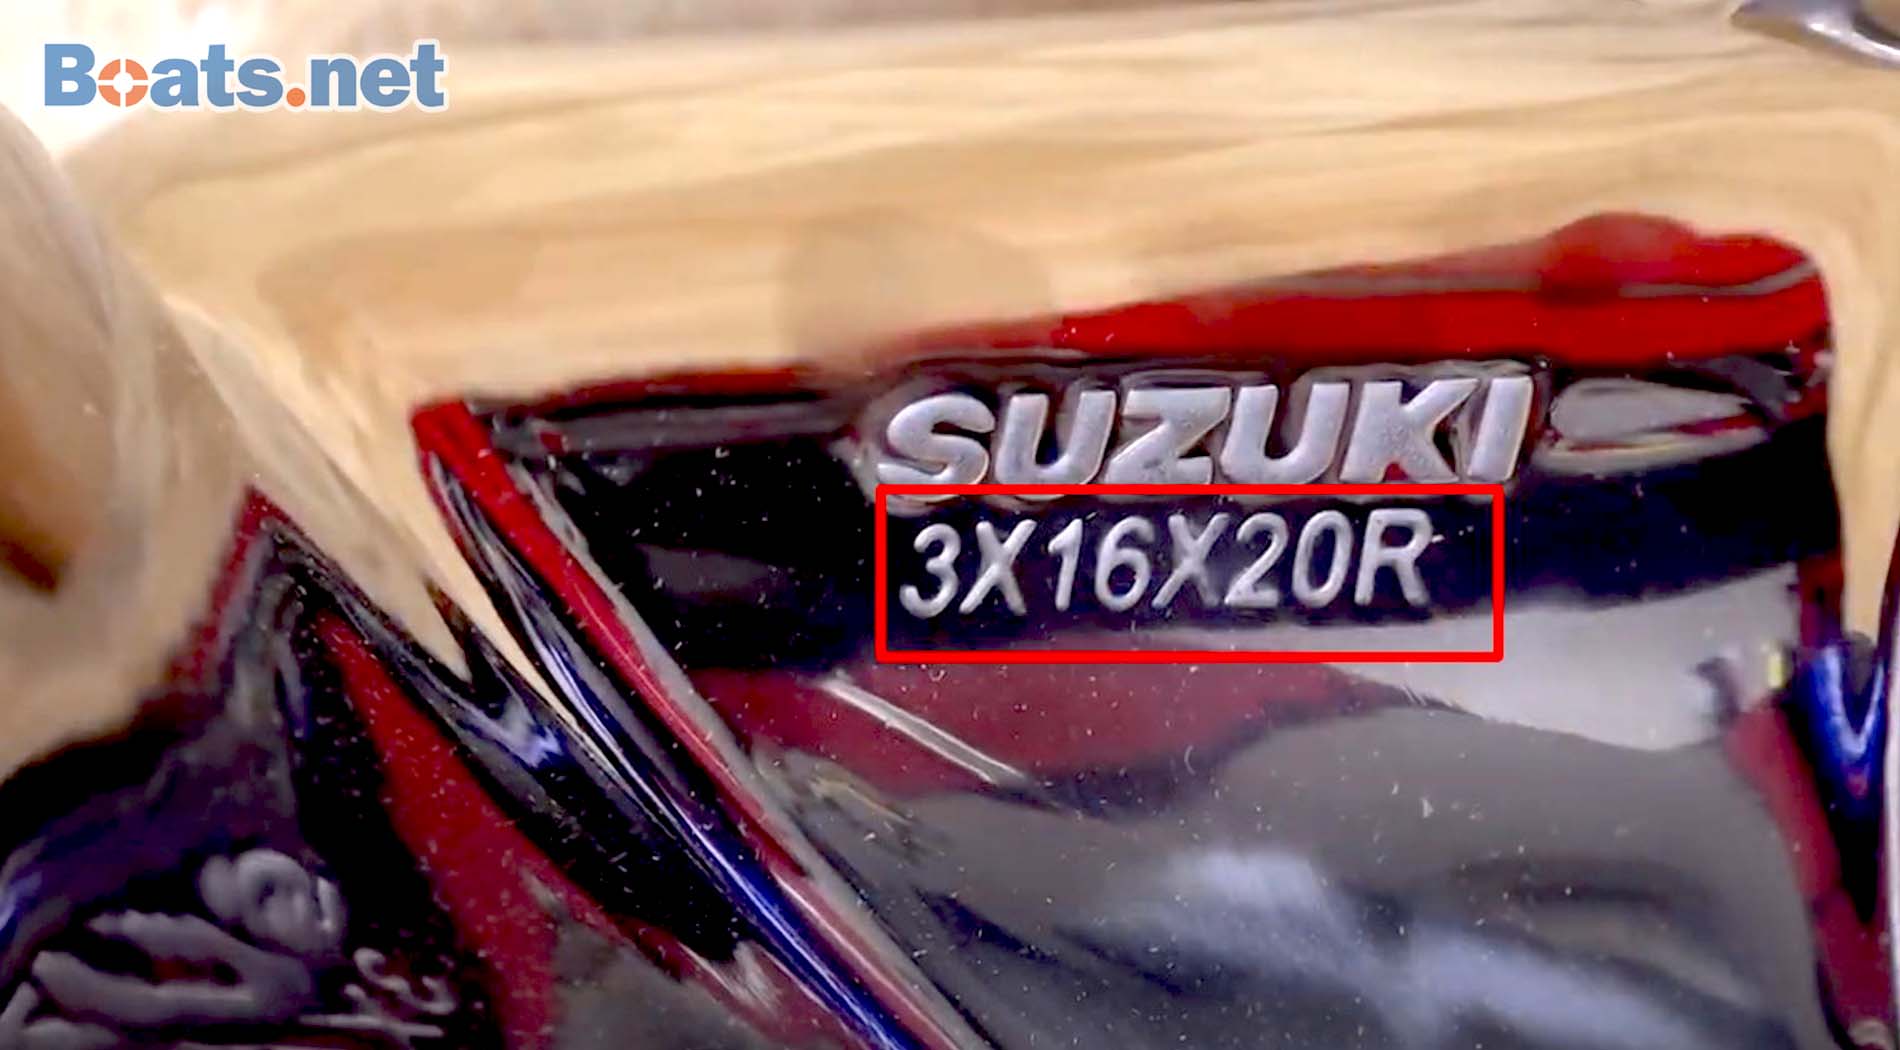 How to find Suzuki boat propeller size